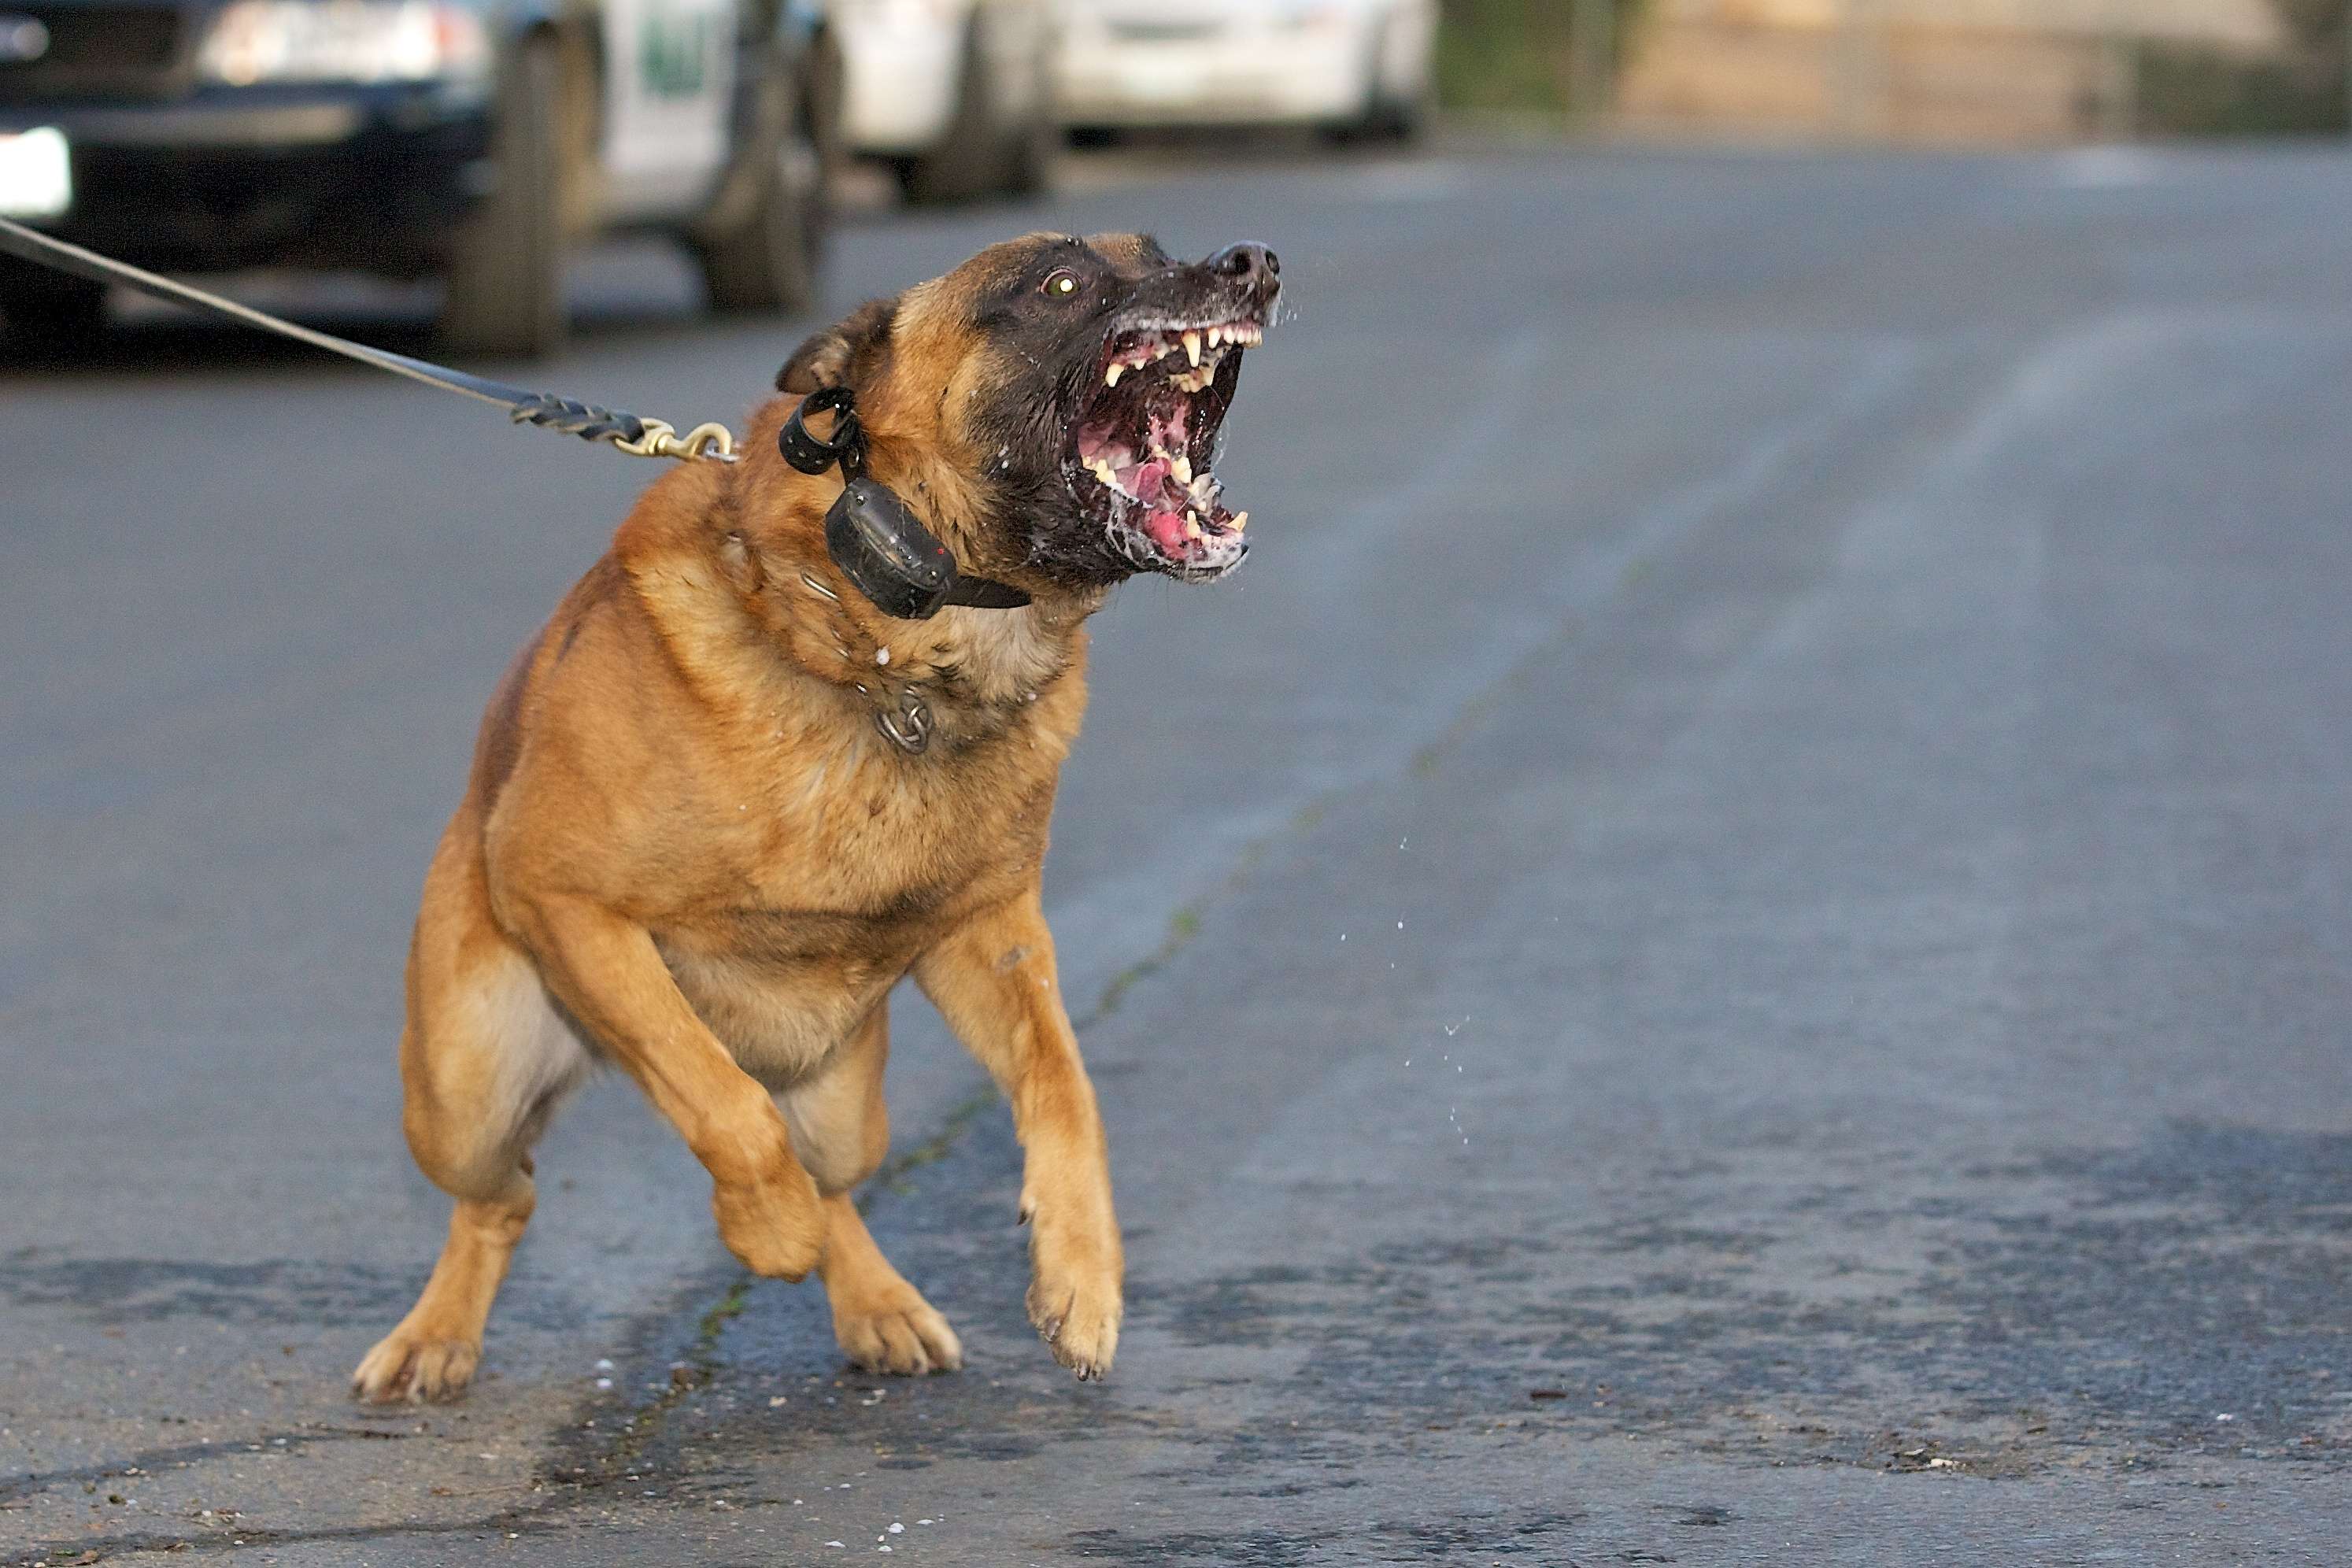 Grenoble : Un homme ordonne à son chien d'attaquer une femme... qui a refusé ses avances